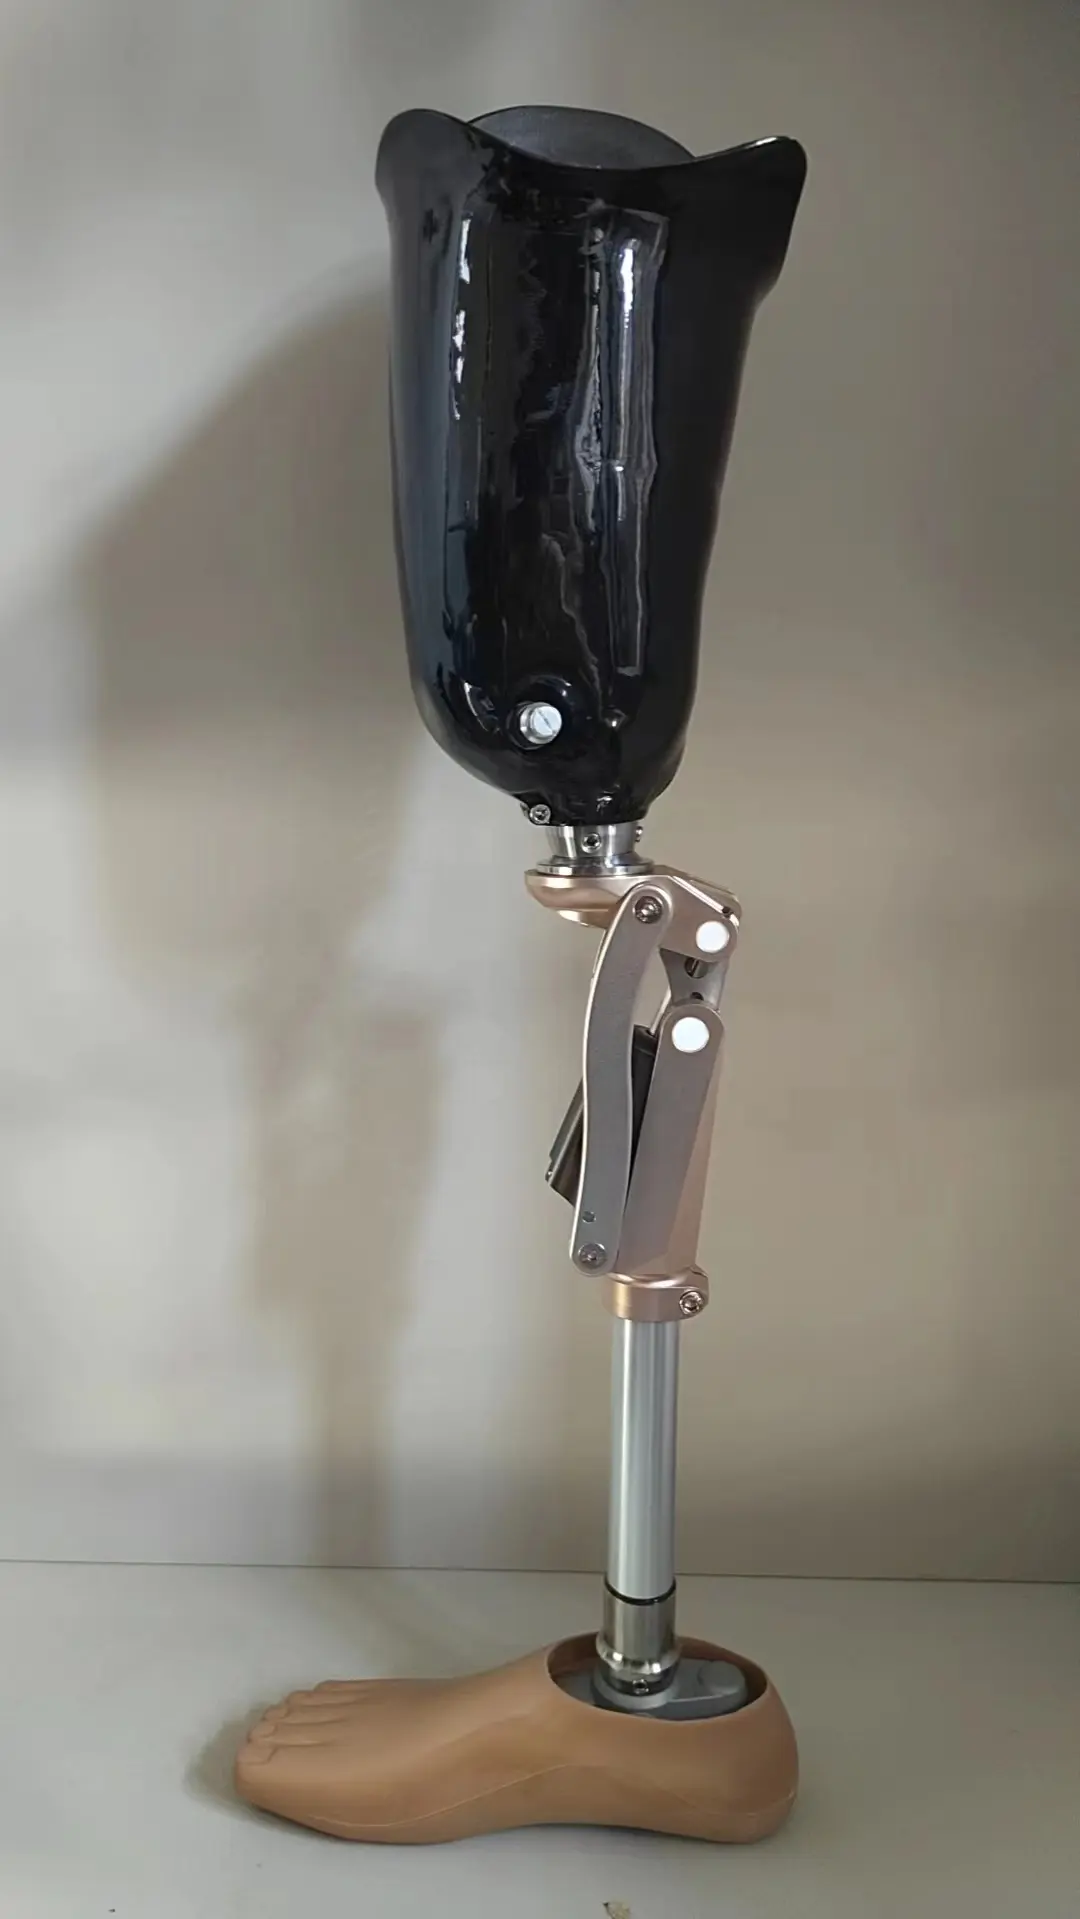 Protez soket, protez bacak, protez bacak parçası bağlayan protez adaptör